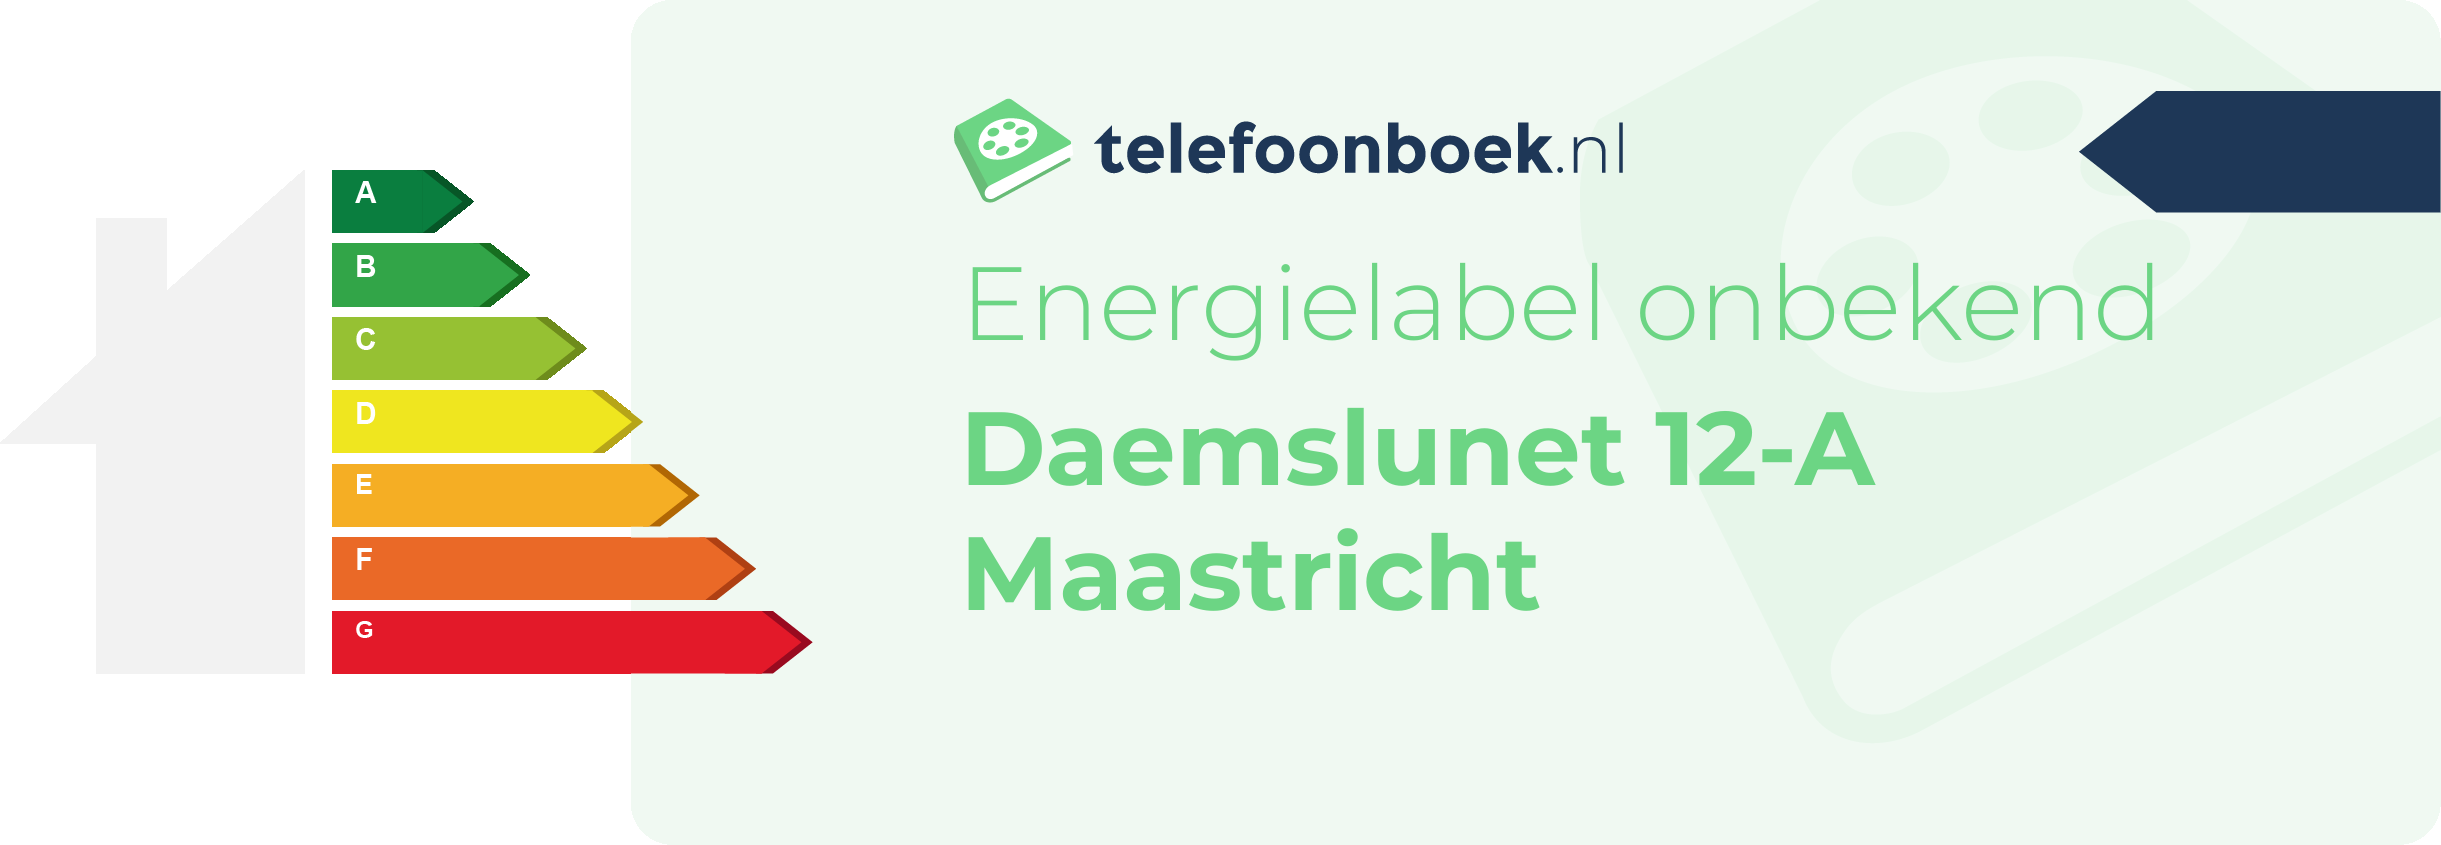 Energielabel Daemslunet 12-A Maastricht